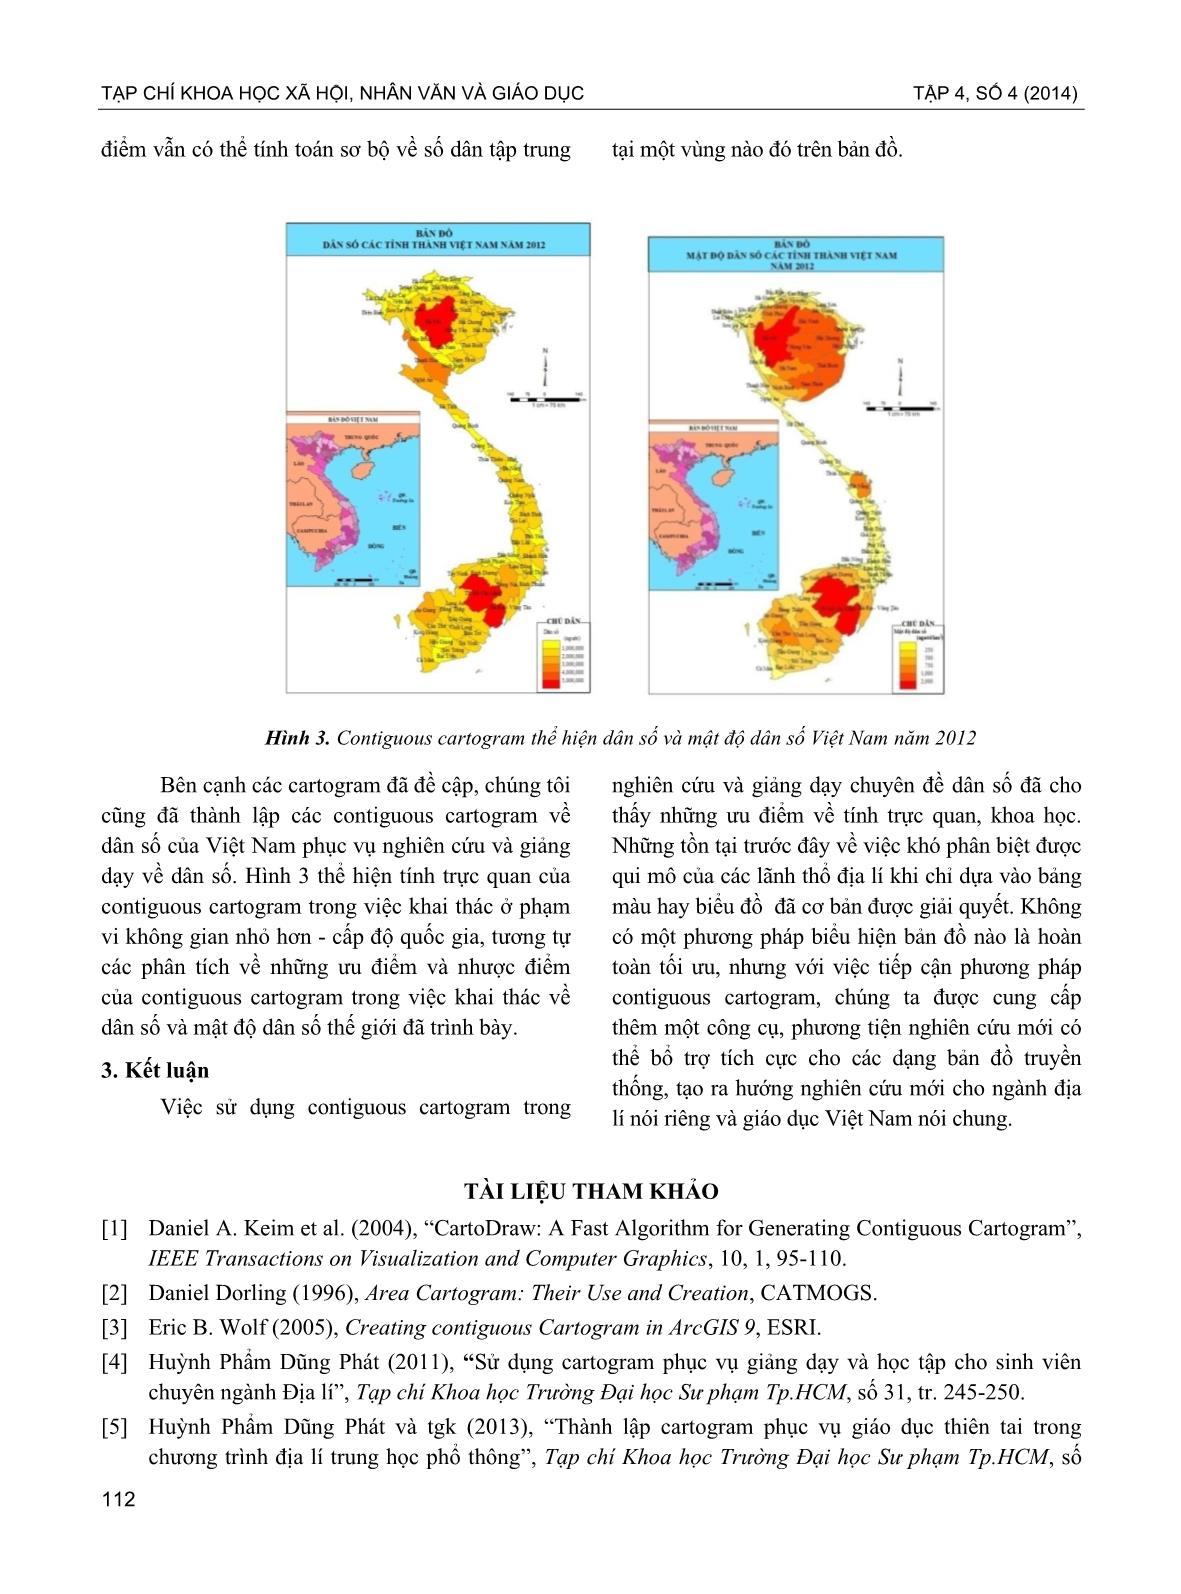 Đánh giá việc sử dụng contiguous cartogram trong giảng dạy Chuyên đề dân số trang 4